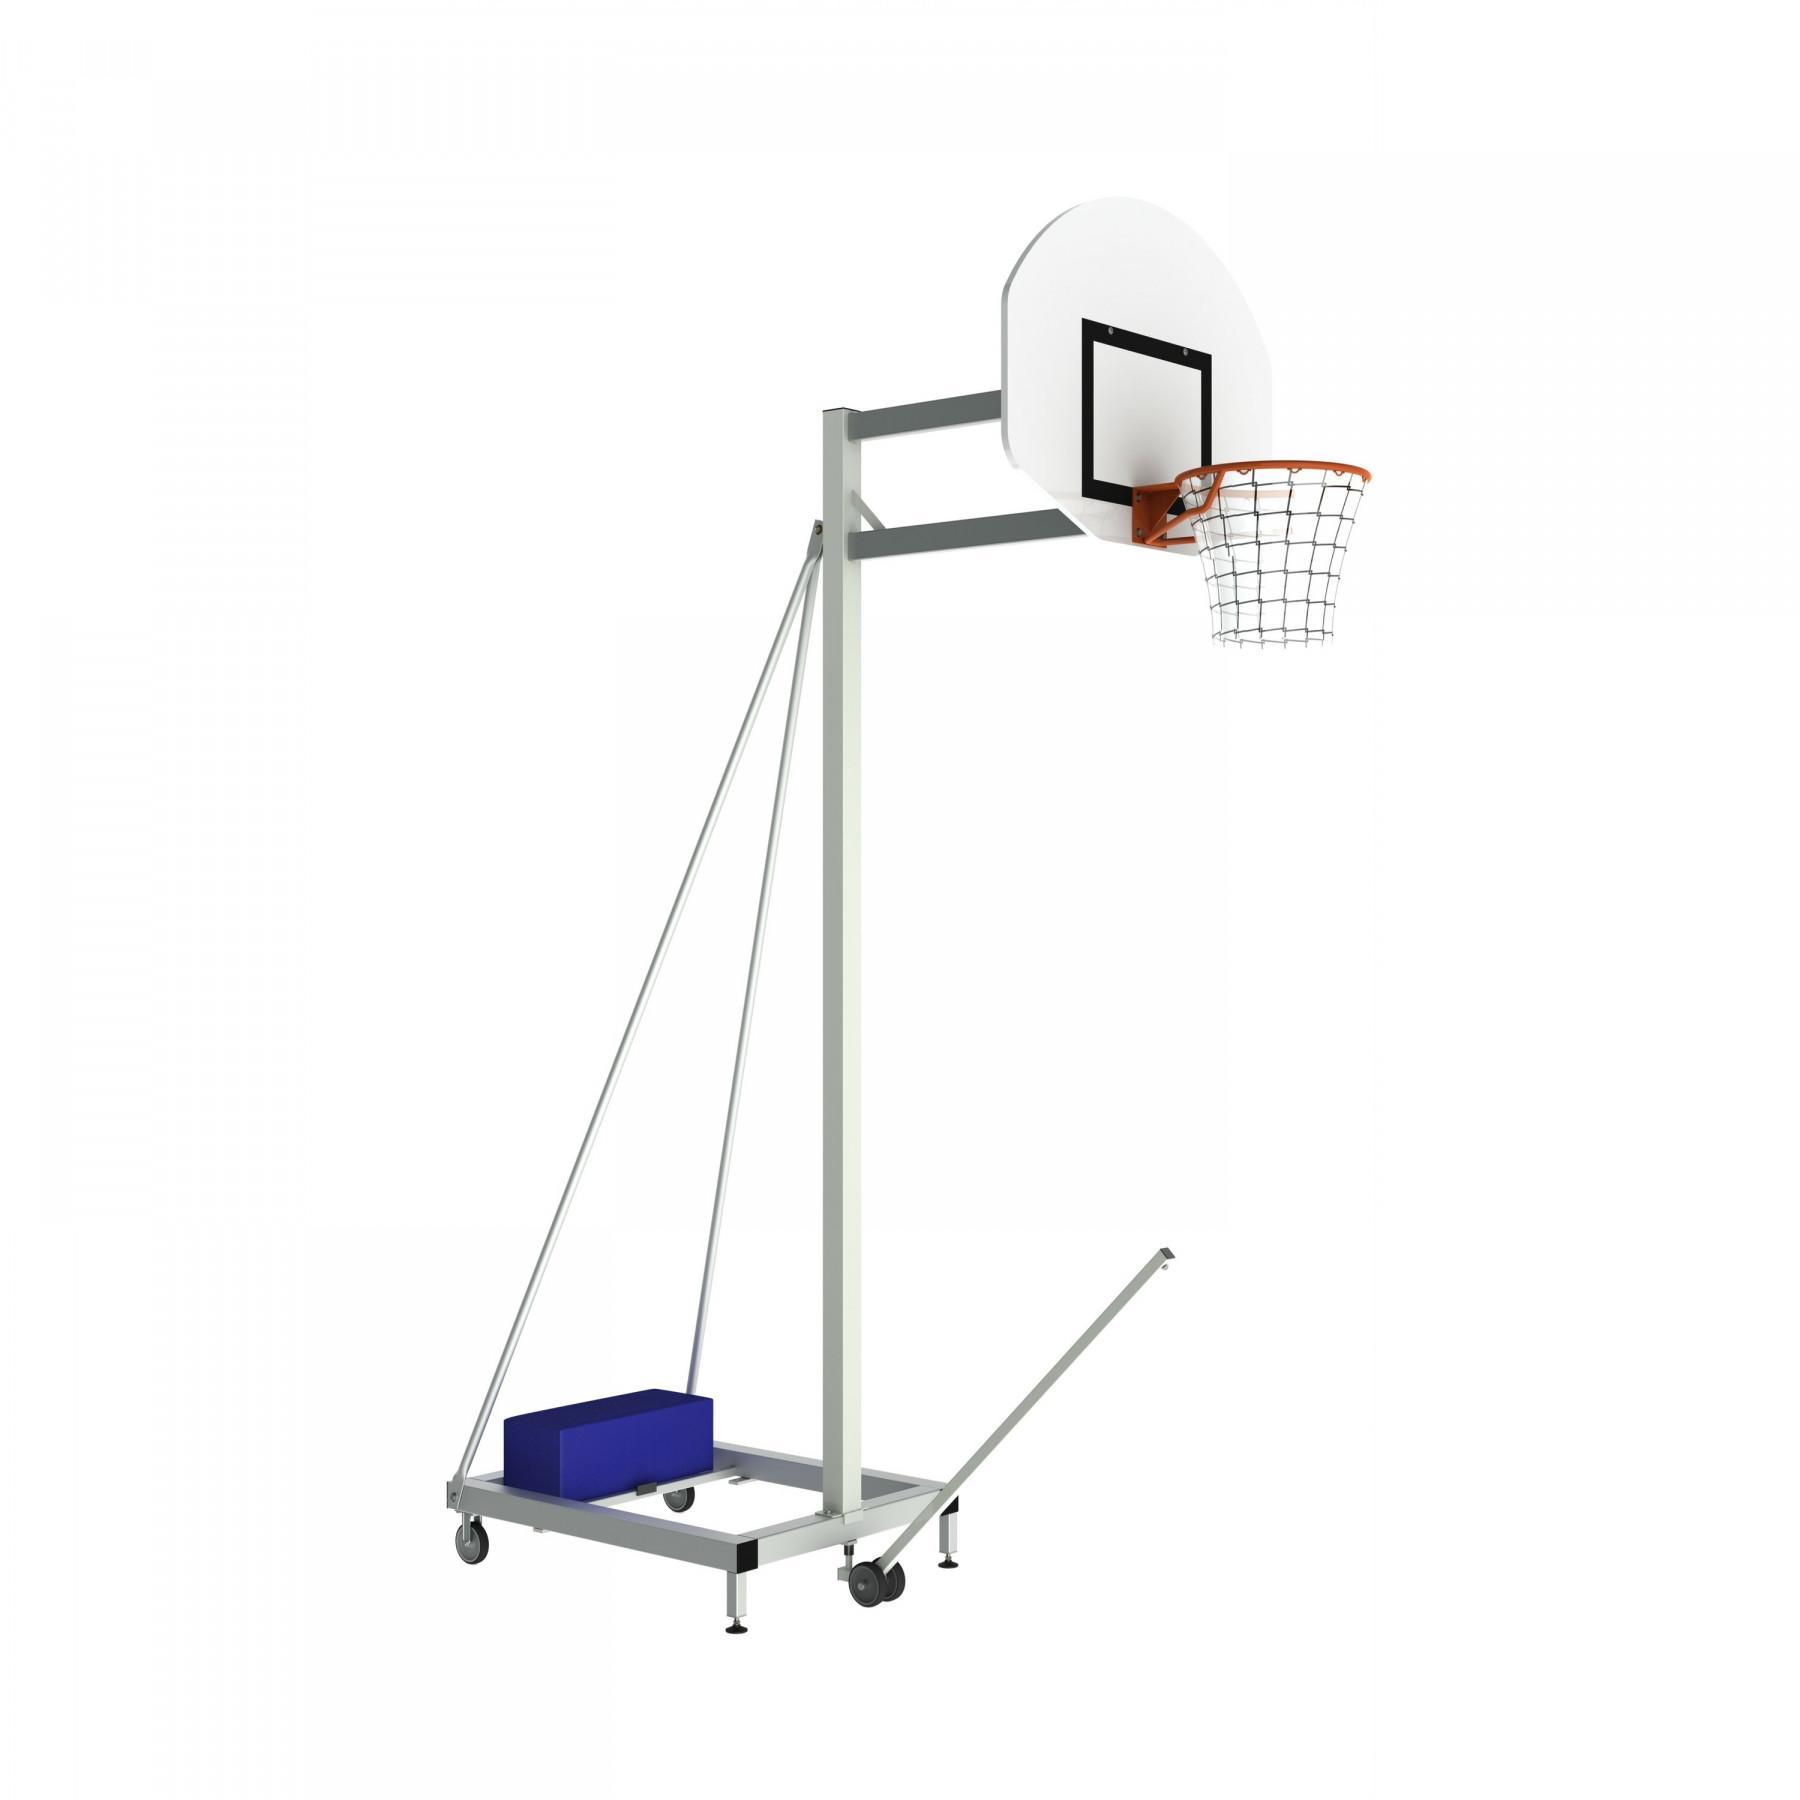 Cabeça fixa para aro de basquetebol 2.60m de altura, com 1m de distância Sporti France